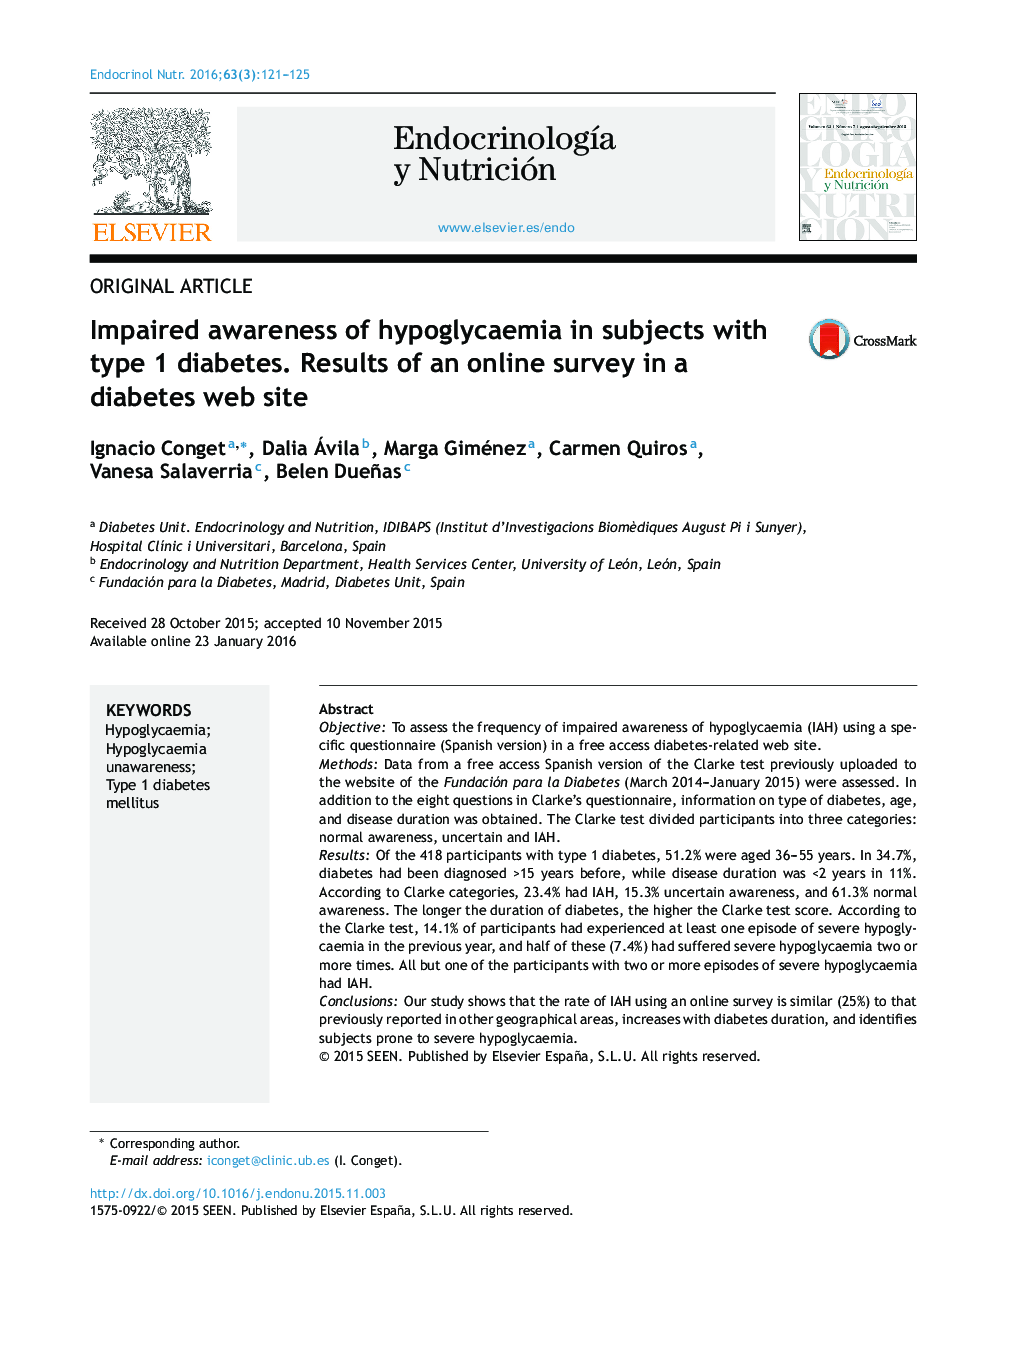 آگاهی از اختلال هیپوگلیسمی در افراد مبتلا به دیابت نوع 1؛ نتایج یک نظرسنجی در یک وب سایت بیماری دیابت